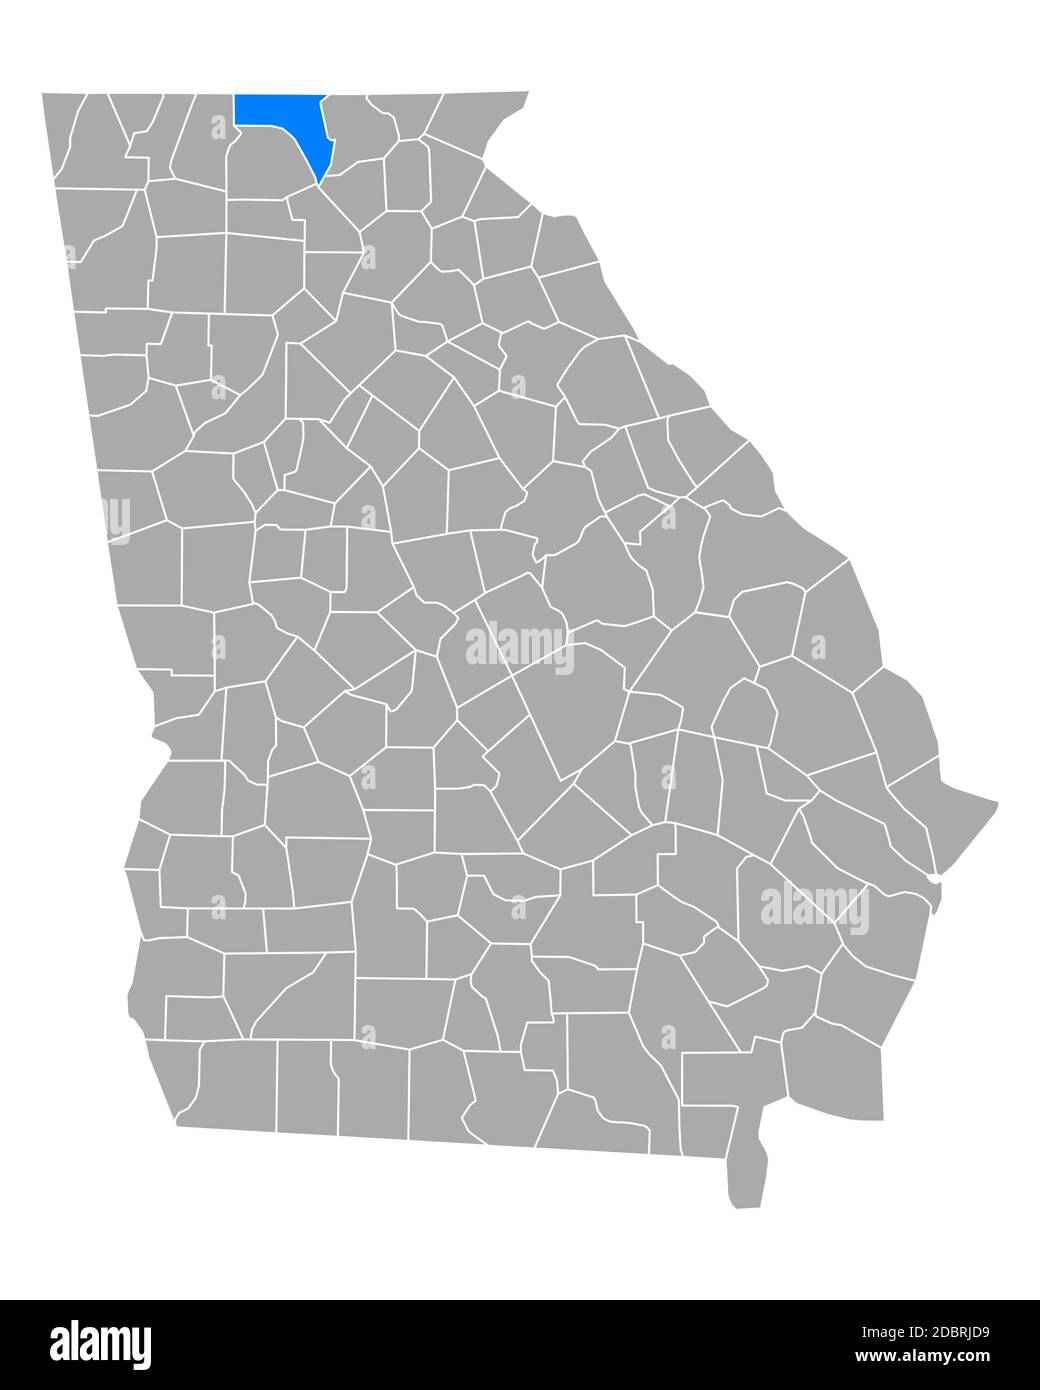 Karte von Fannin in Georgien Stockfoto